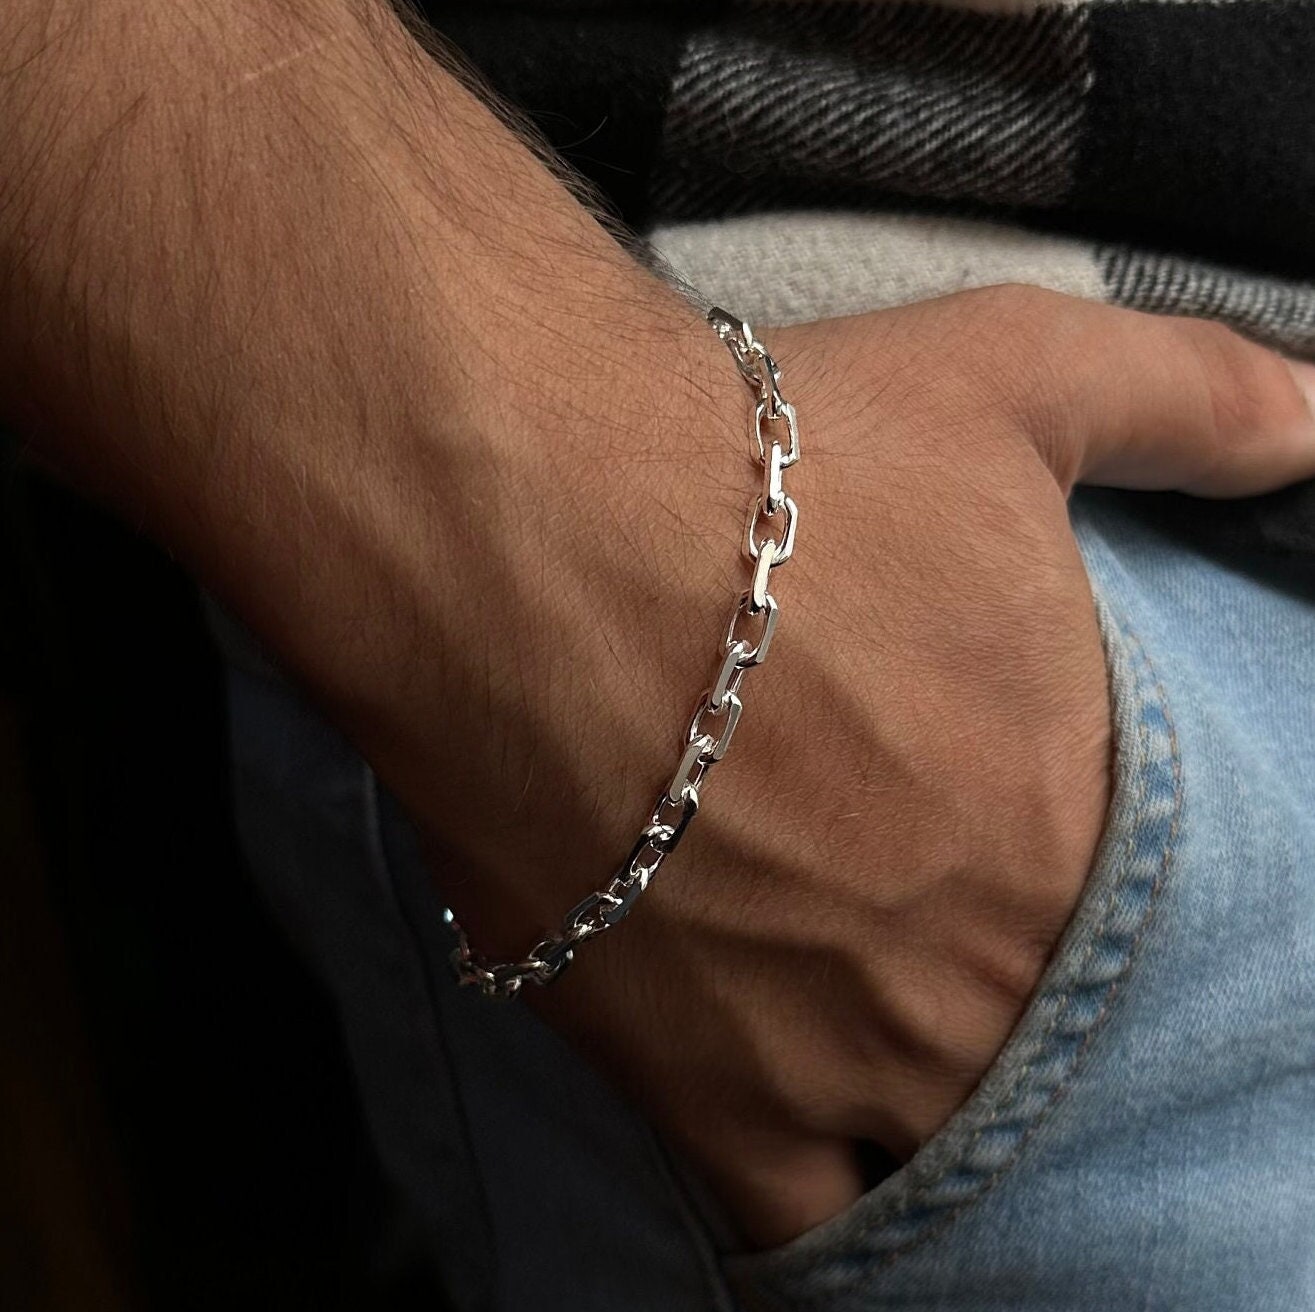  Silver links chain bracelet for men,men's bracelet, flat chain,  groomsmen gift, gift for him, mens jewelry, gift for boyfriend, silver :  Handmade Products